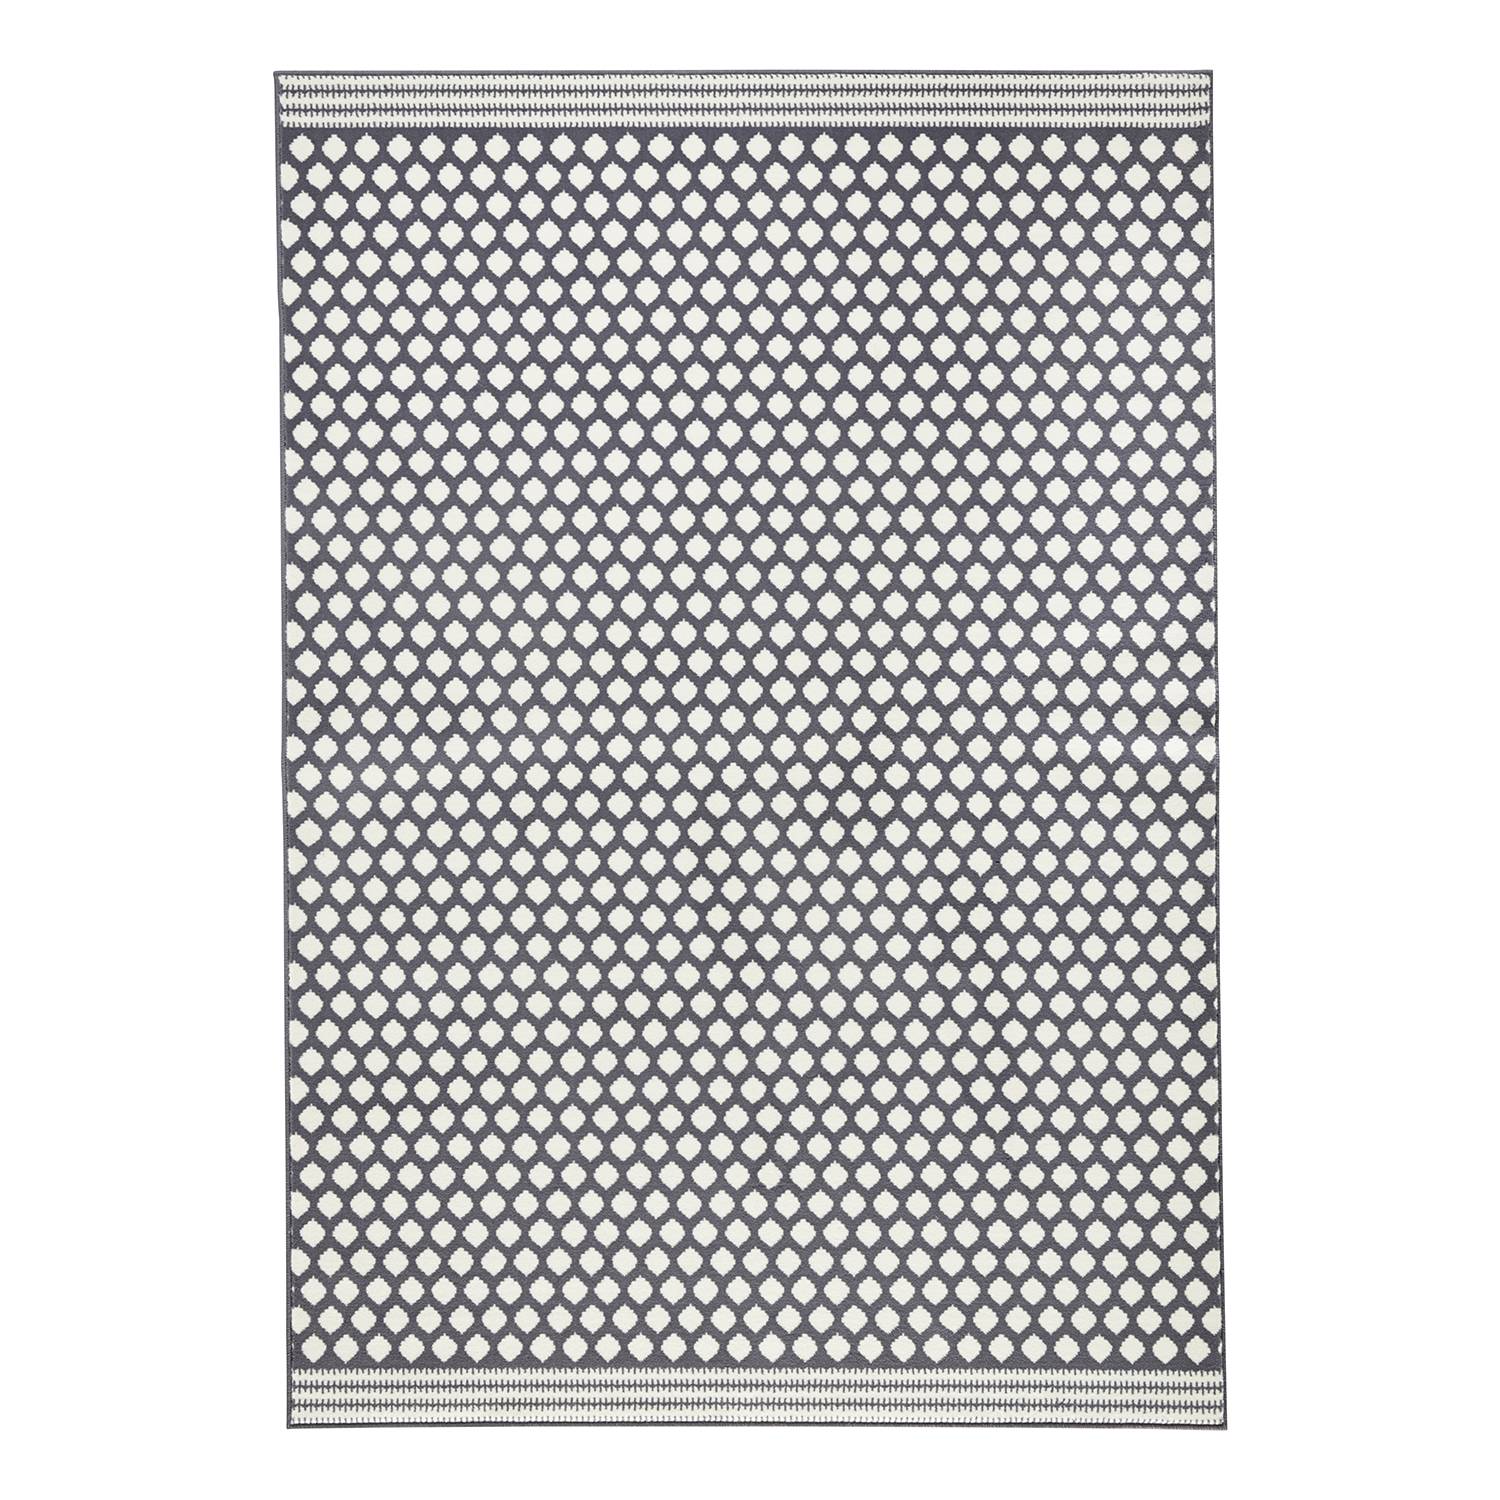 Teppich Spot - Kunstfaser - Grau / Creme - 140 x 200 cm, mooved